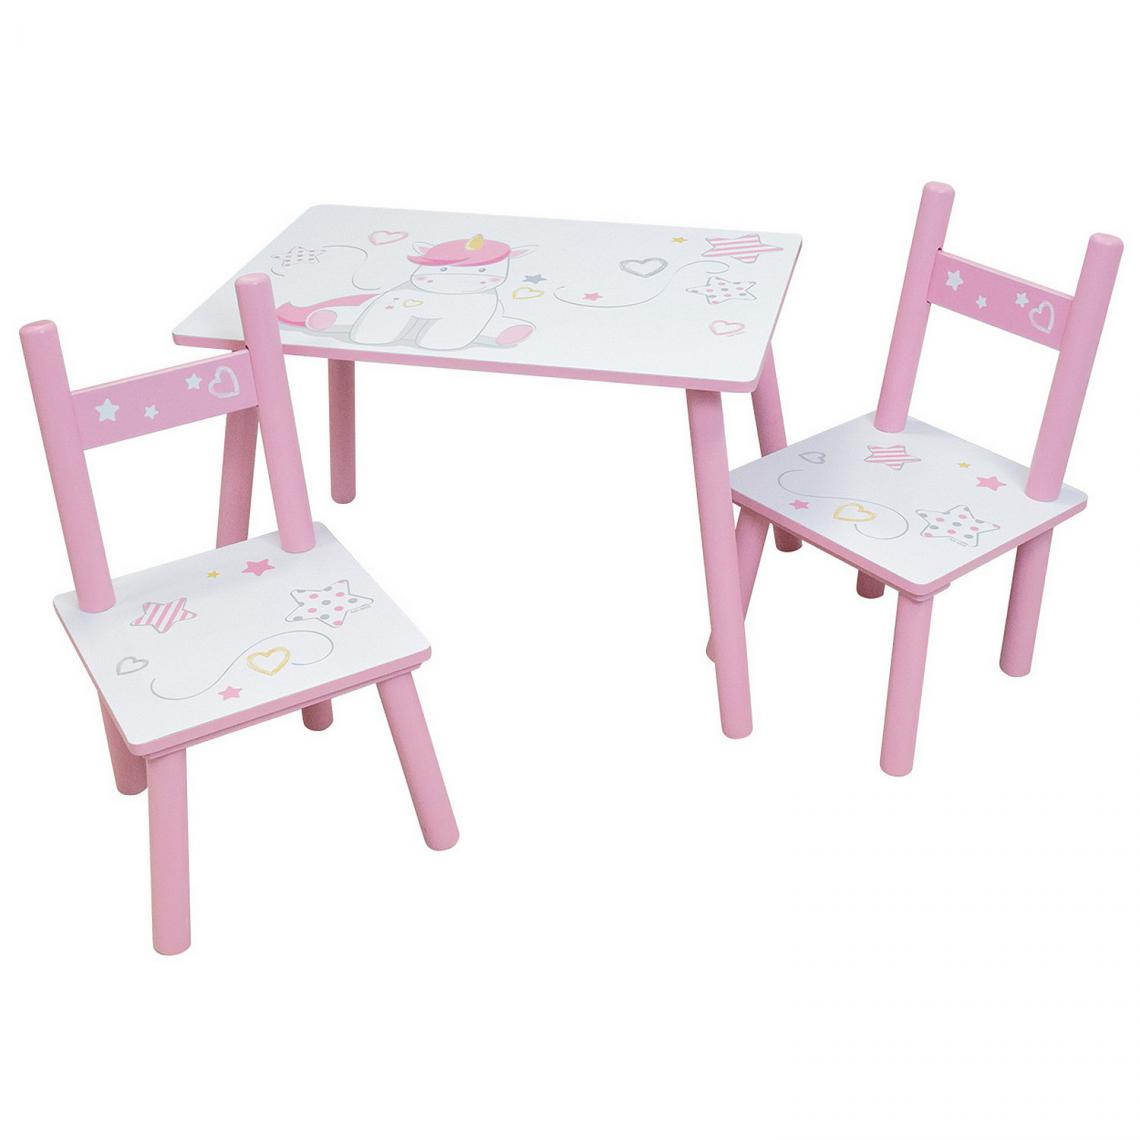 Jemini/Fun House - LICORNE TABLE RECTANGULAIRE H.41,5XL.61XP.42 CM + 2 CHAISES H.49,5XL.31XP.31,5CM POUR ENFANT - Tables à manger